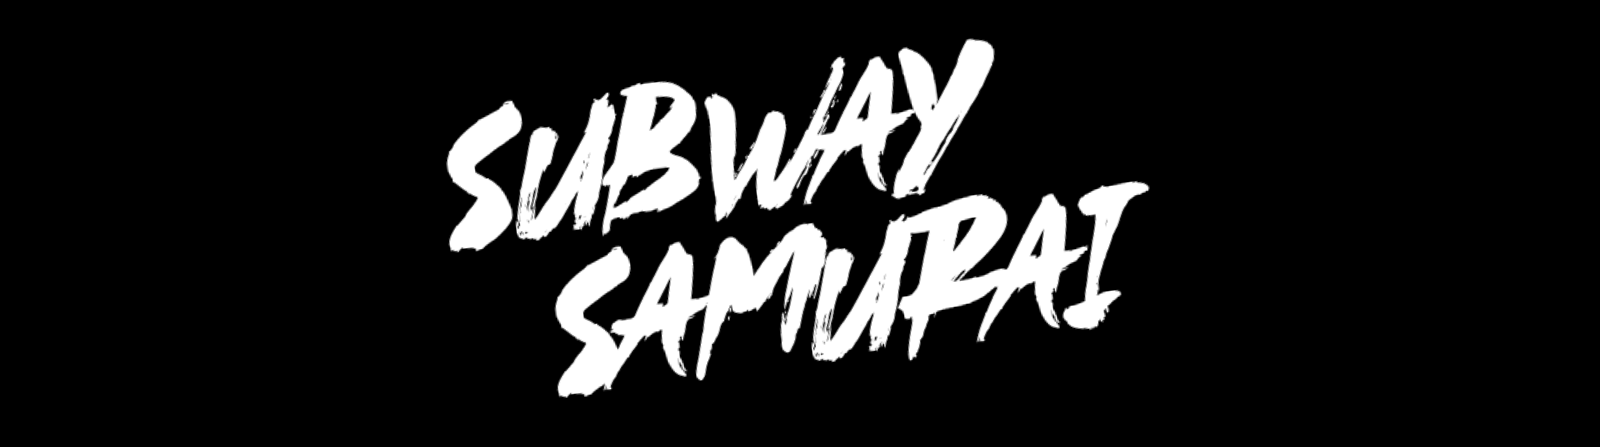 Subway Samurai